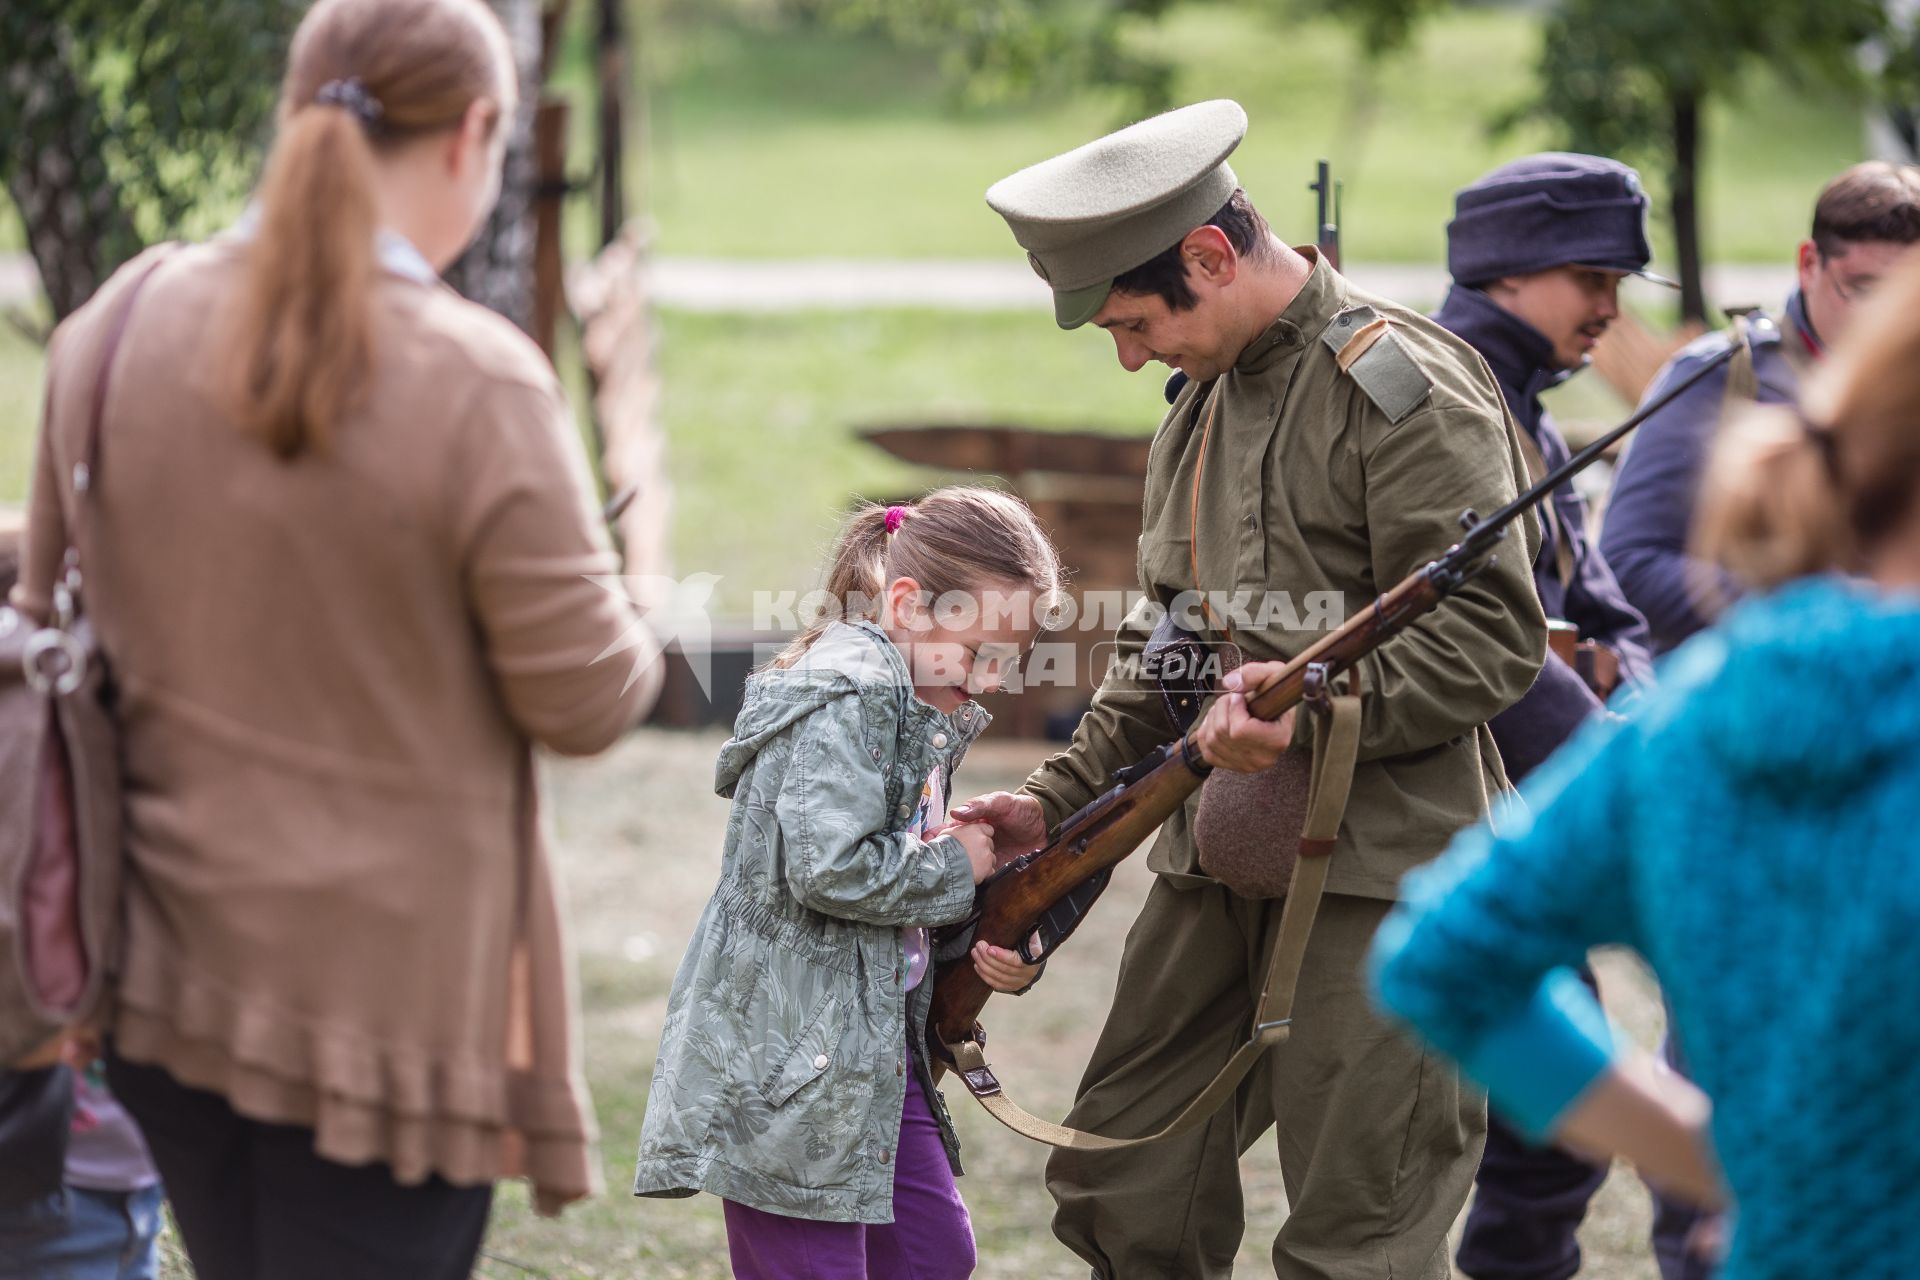 Челябинск. Дети знакомятся с оружием времен Первой мировой войны во время  проведения военно-исторической реконструкции Брусиловского прорыва.